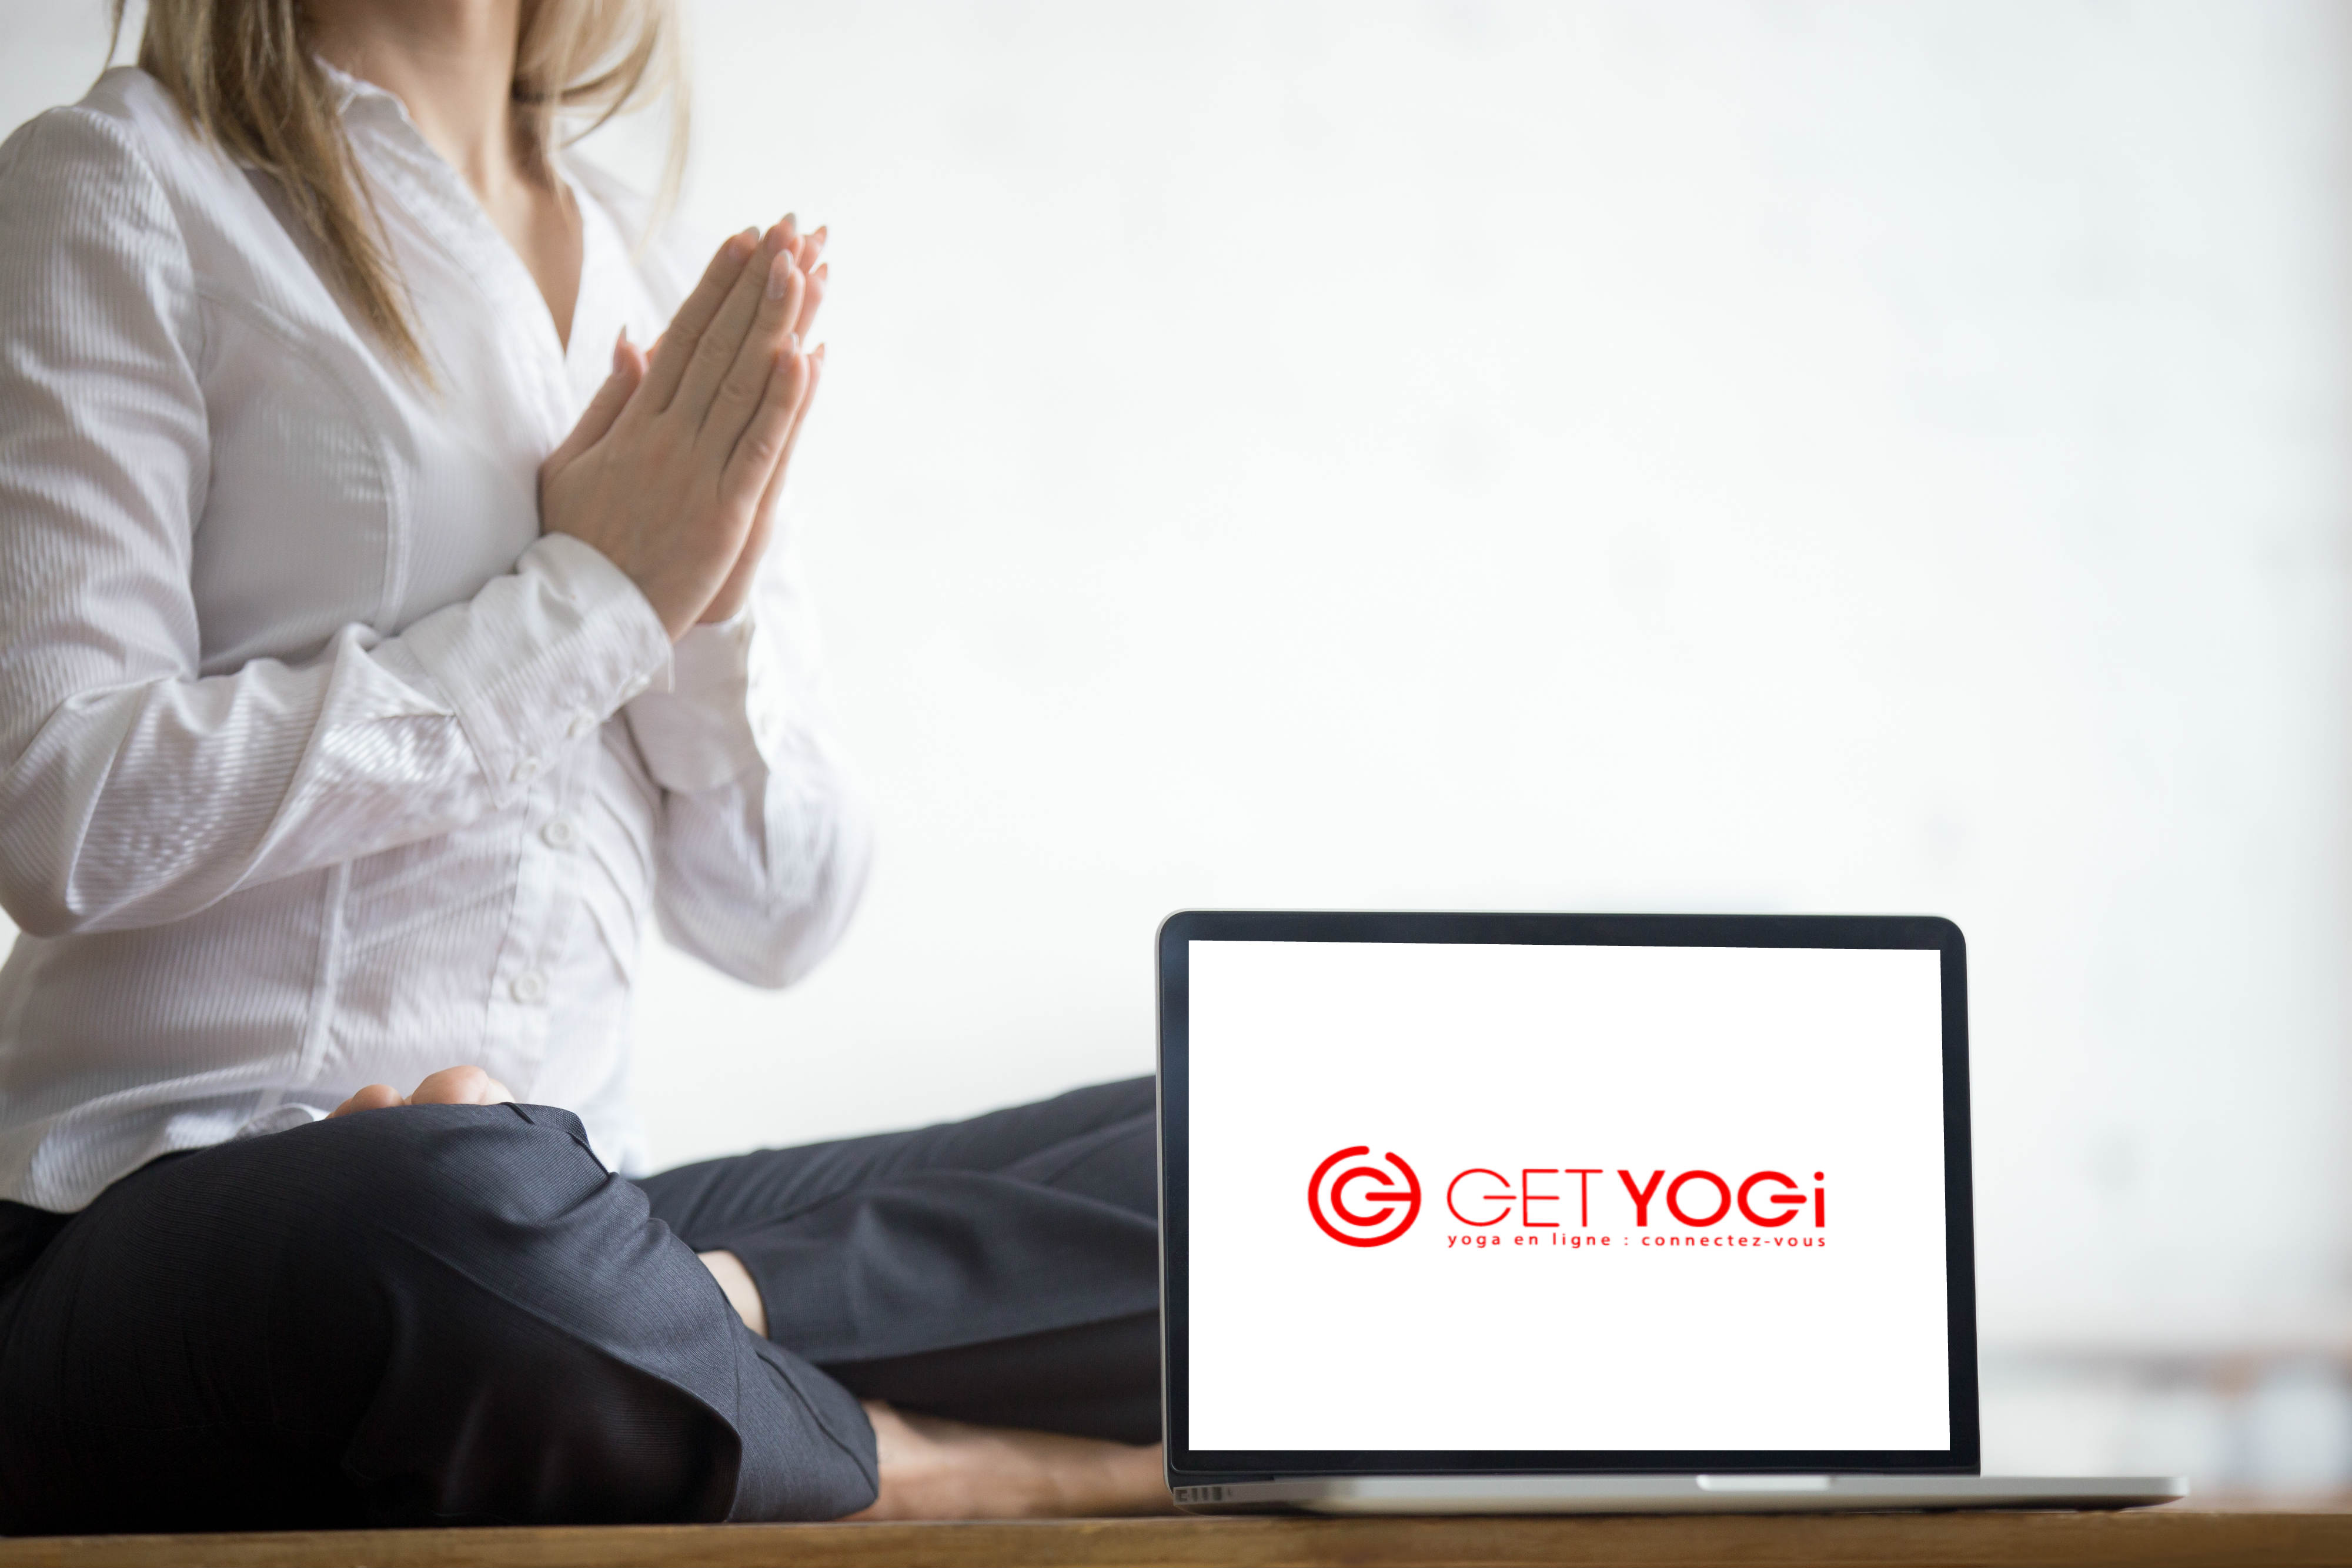 Yoga en entreprise yoga au bureau cours de yoga meditation cours de yoga en ligne GET YOGi